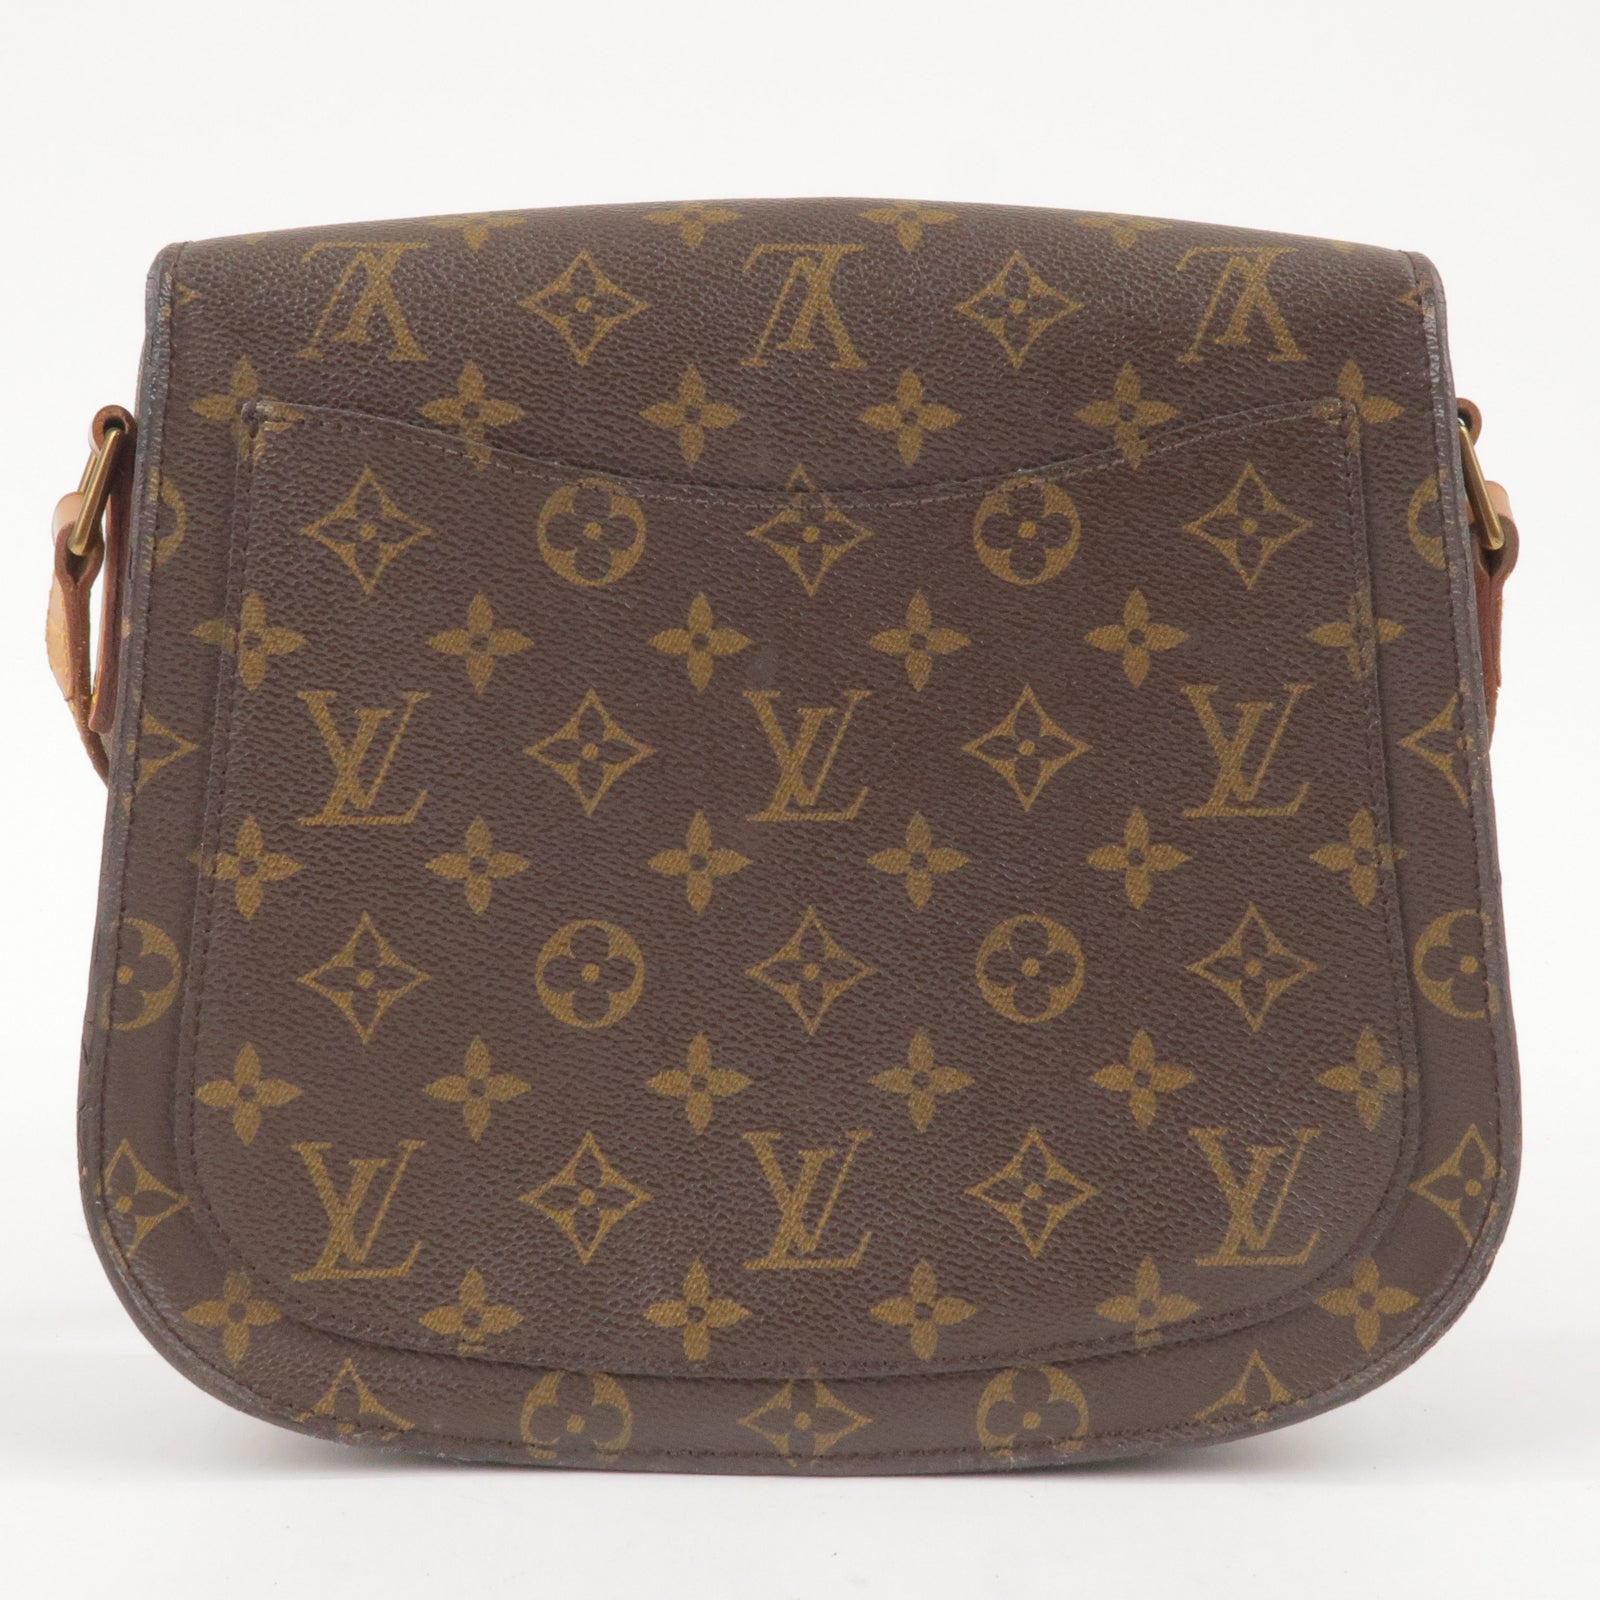 Authentic Louis Vuitton Monogram Ellipse PM Tote Hand Bag DHL EMS